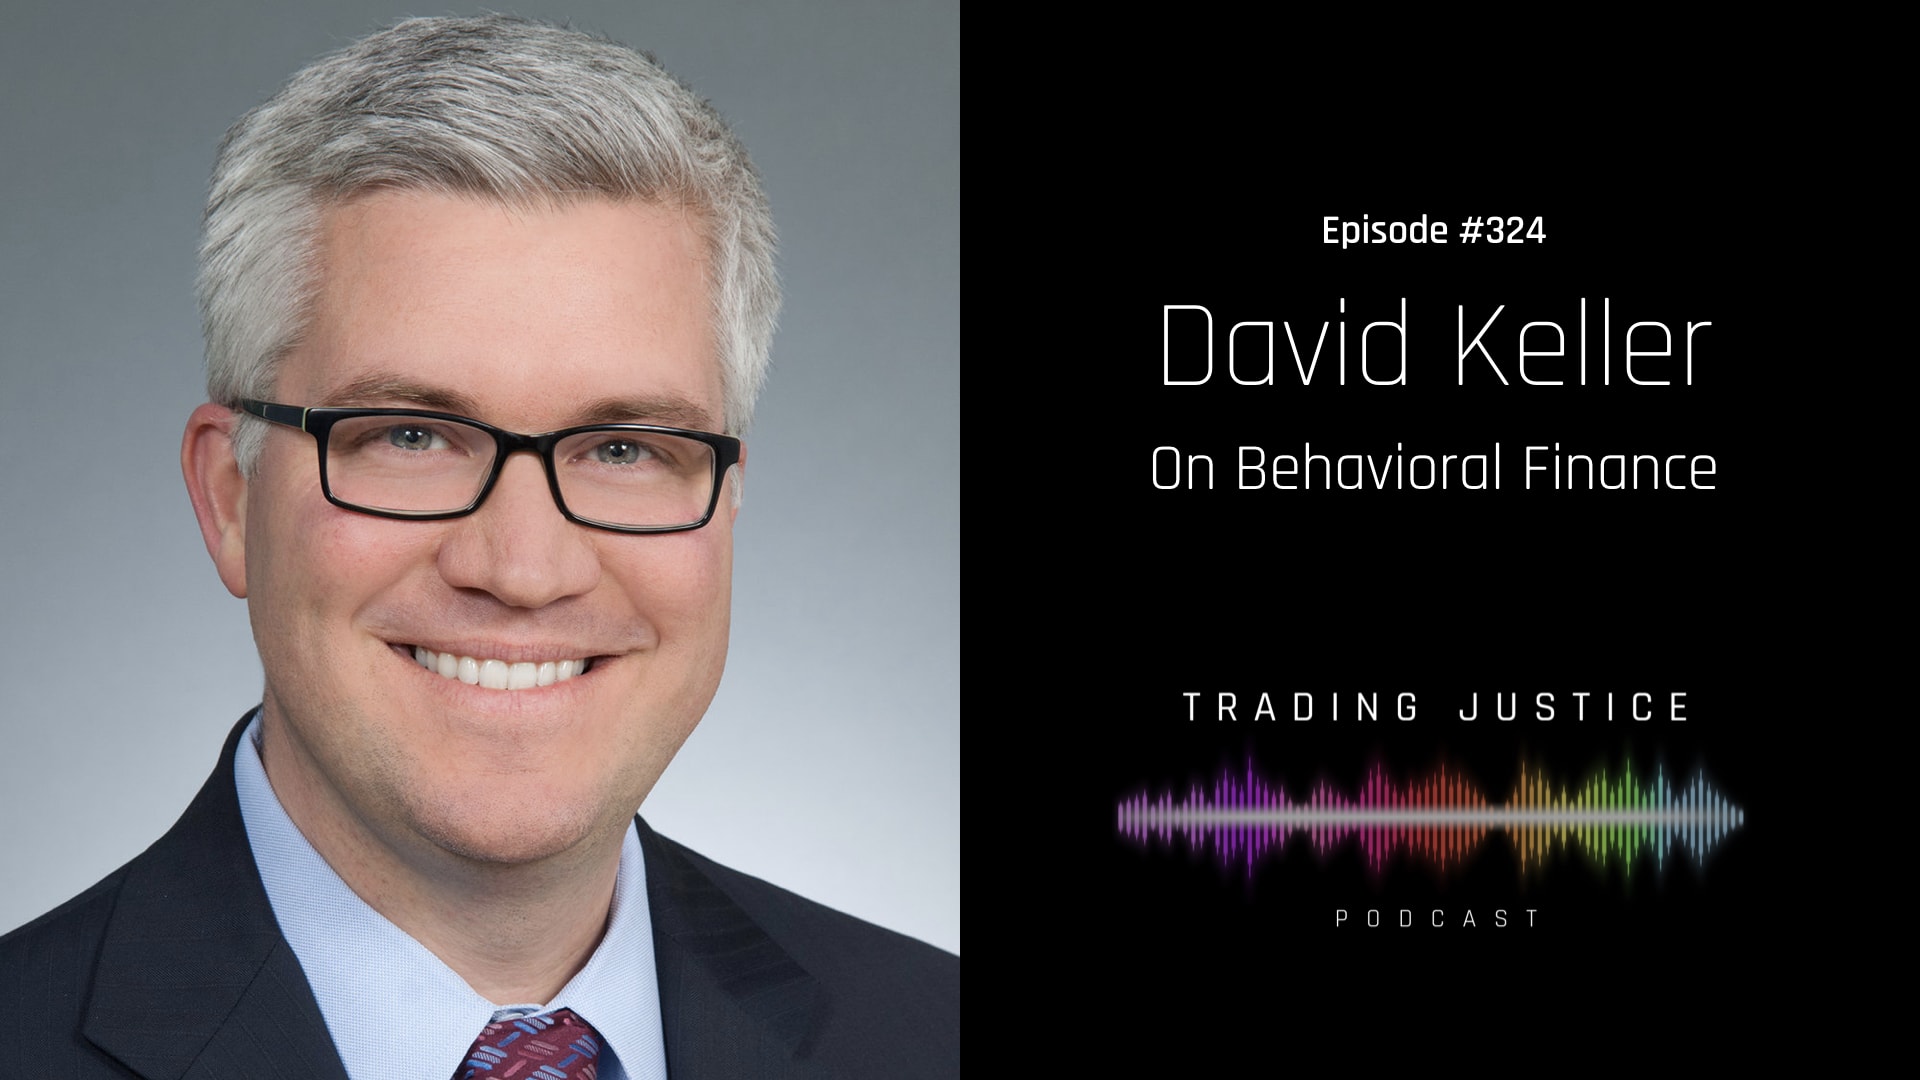 Trading Justice Episode 324: David Keller on Behavioral Finance